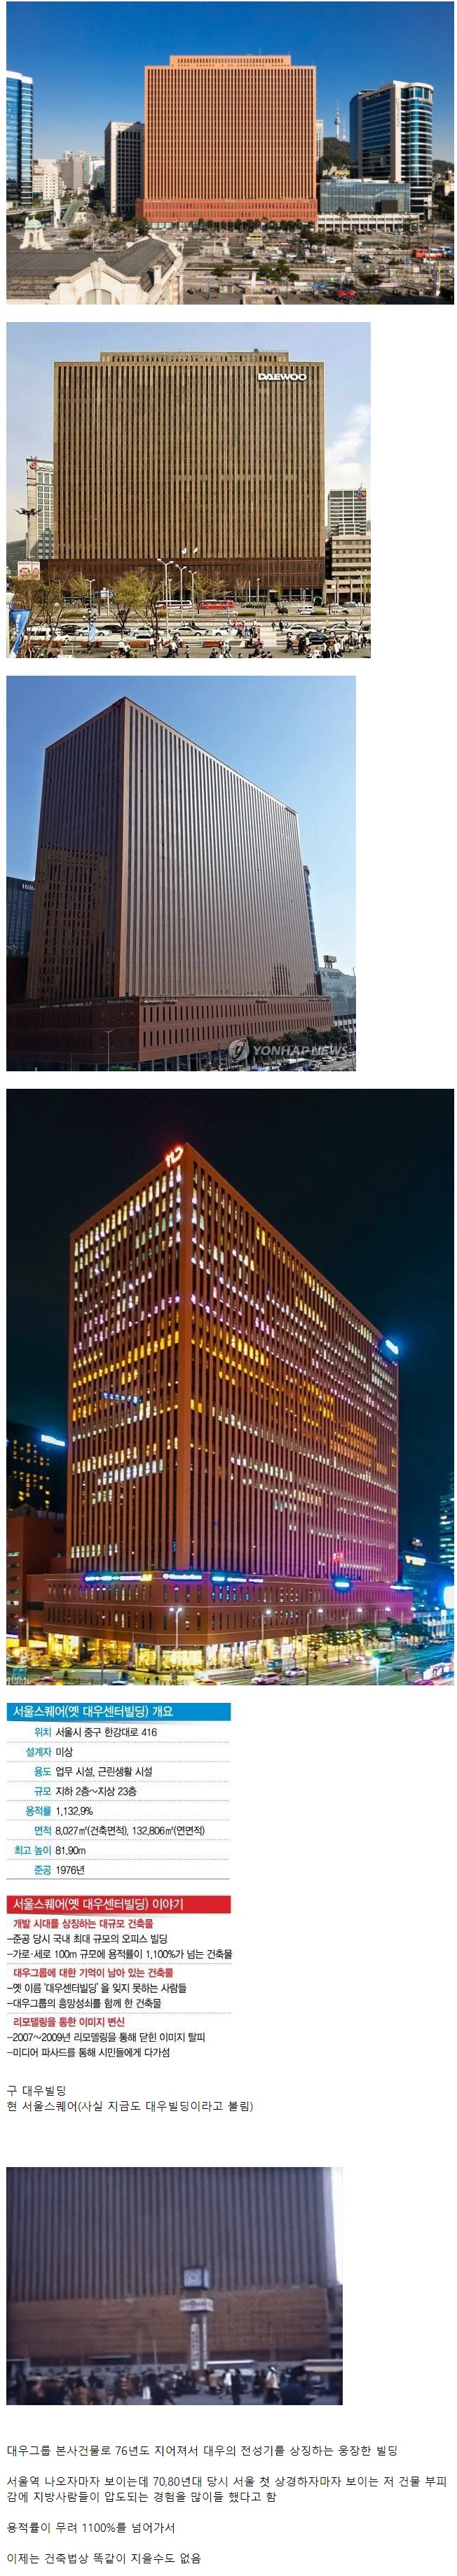 한 때 63빌딩과 함께 서울을 상징하던 건물